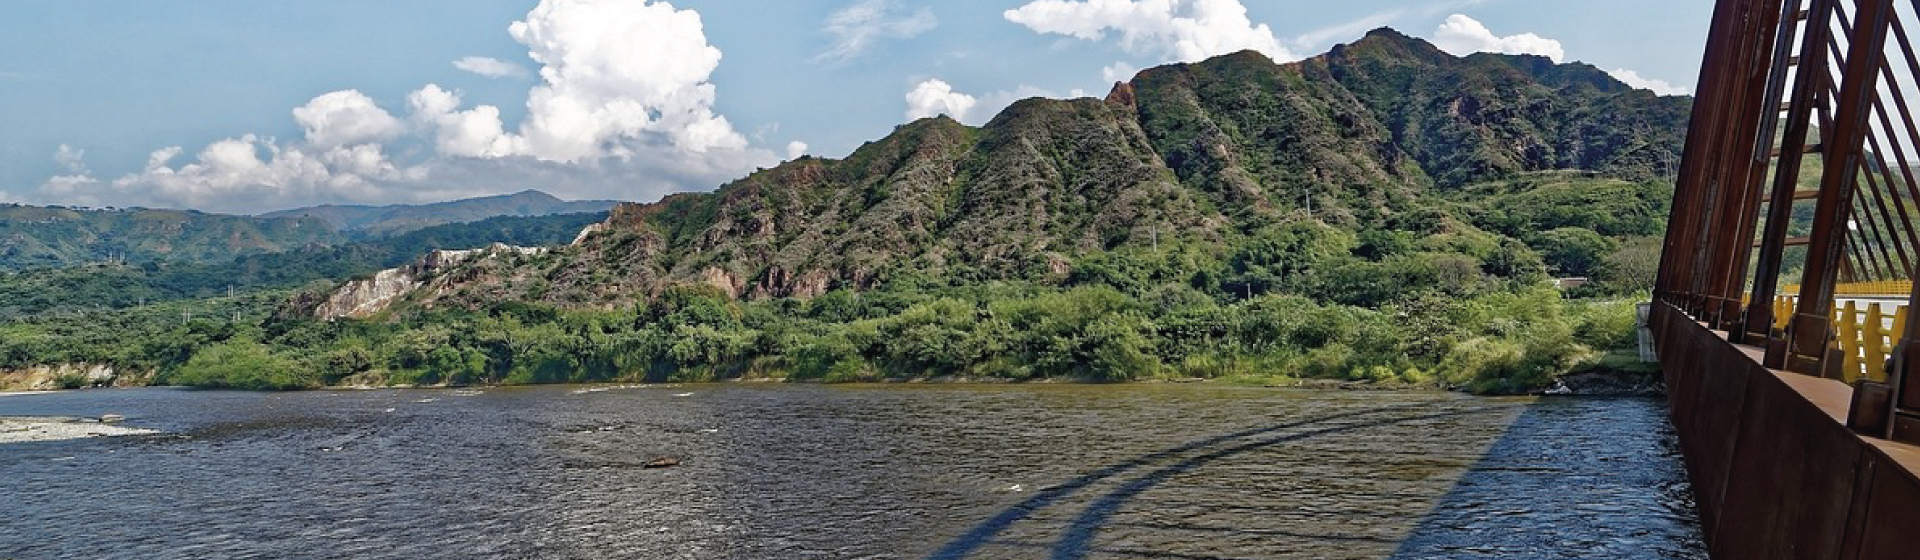 El Río Magdalena, su impacto económico y ambiental, y su legislación, serán estudiados desde la Biblioteca Británica